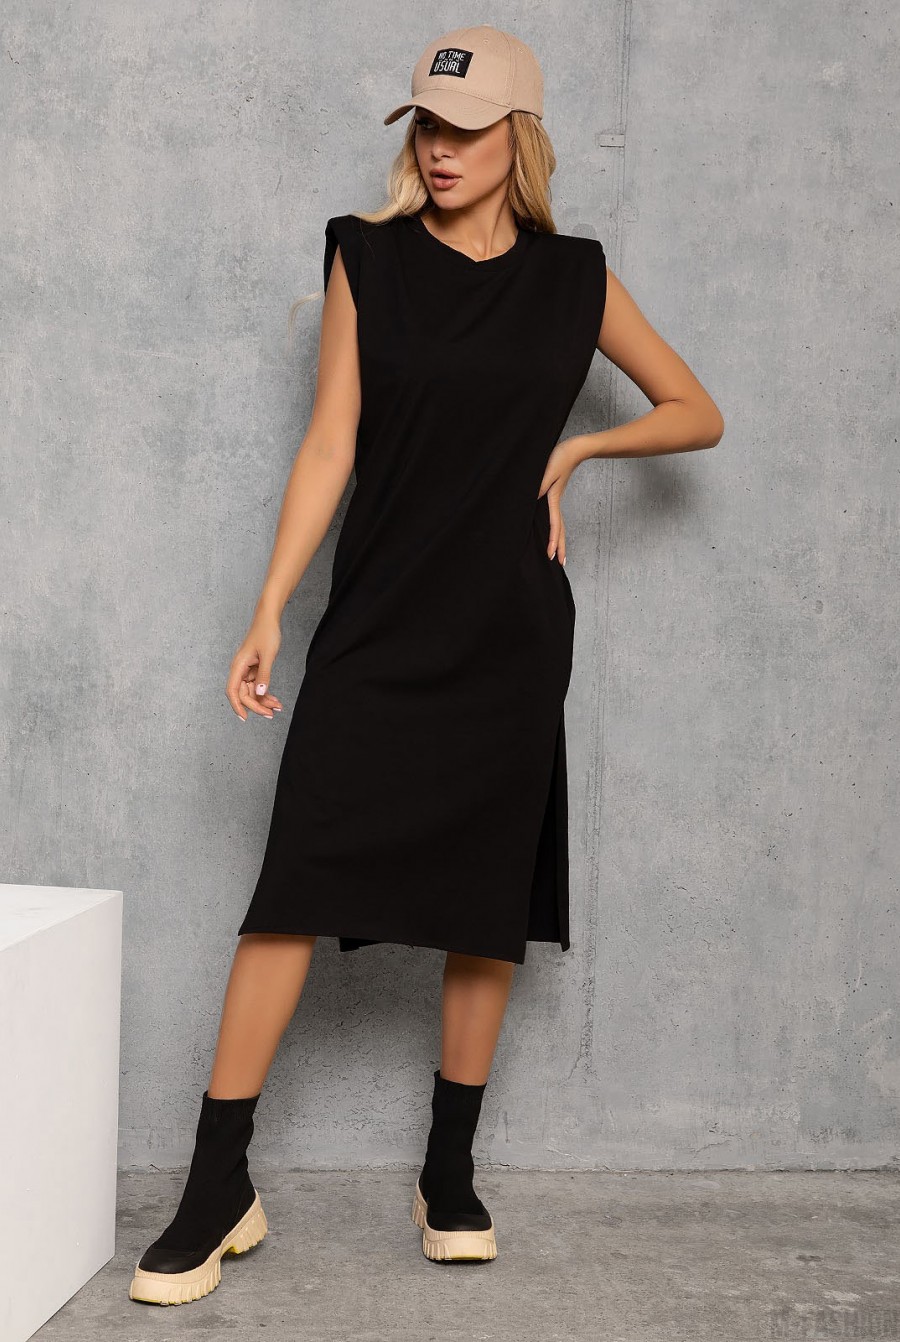 Черное трикотажное платье с плечиками и боковыми разрезами - Фото 1